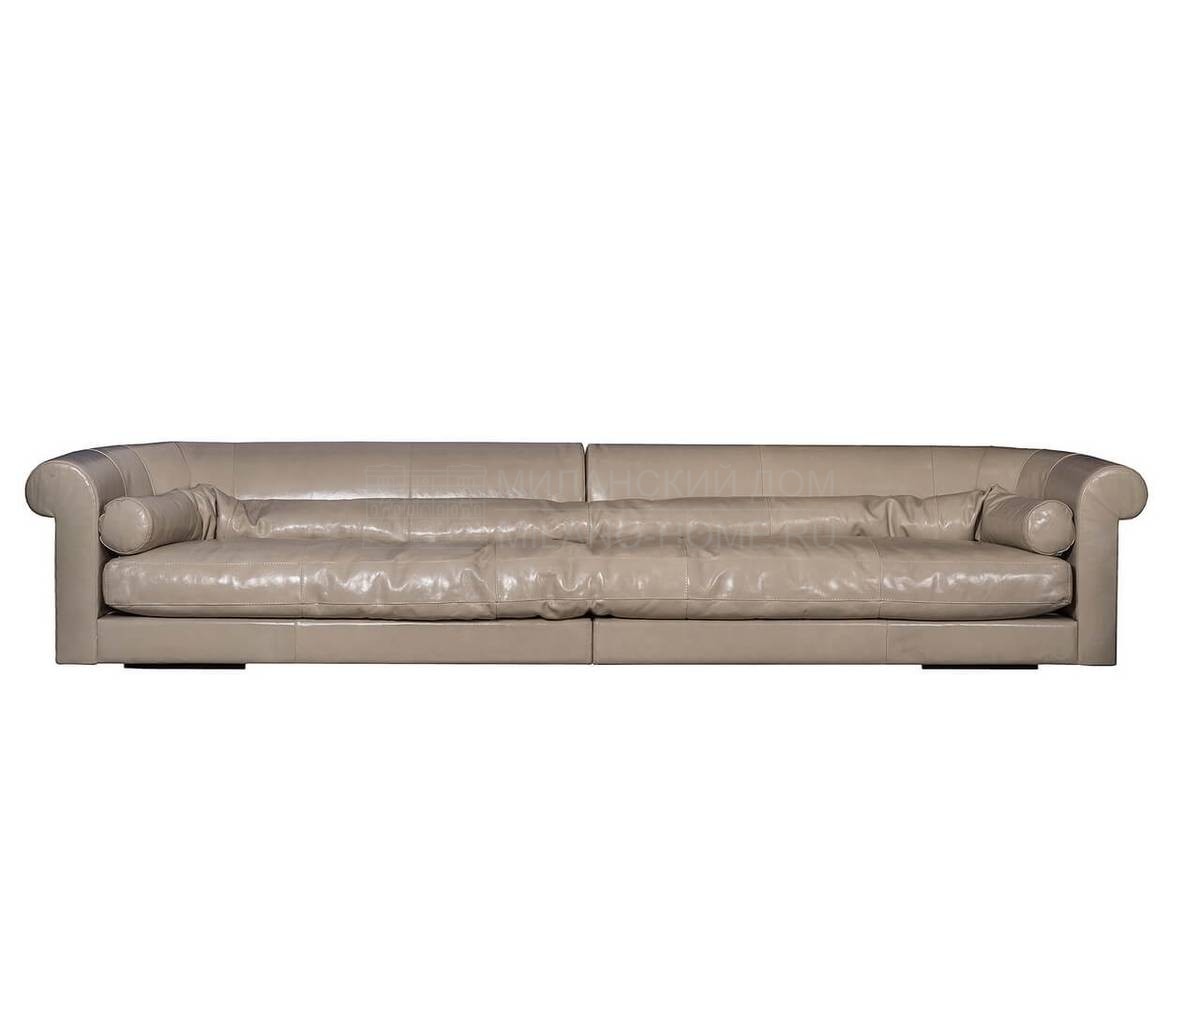 Прямой диван Alfred long из Италии фабрики BAXTER